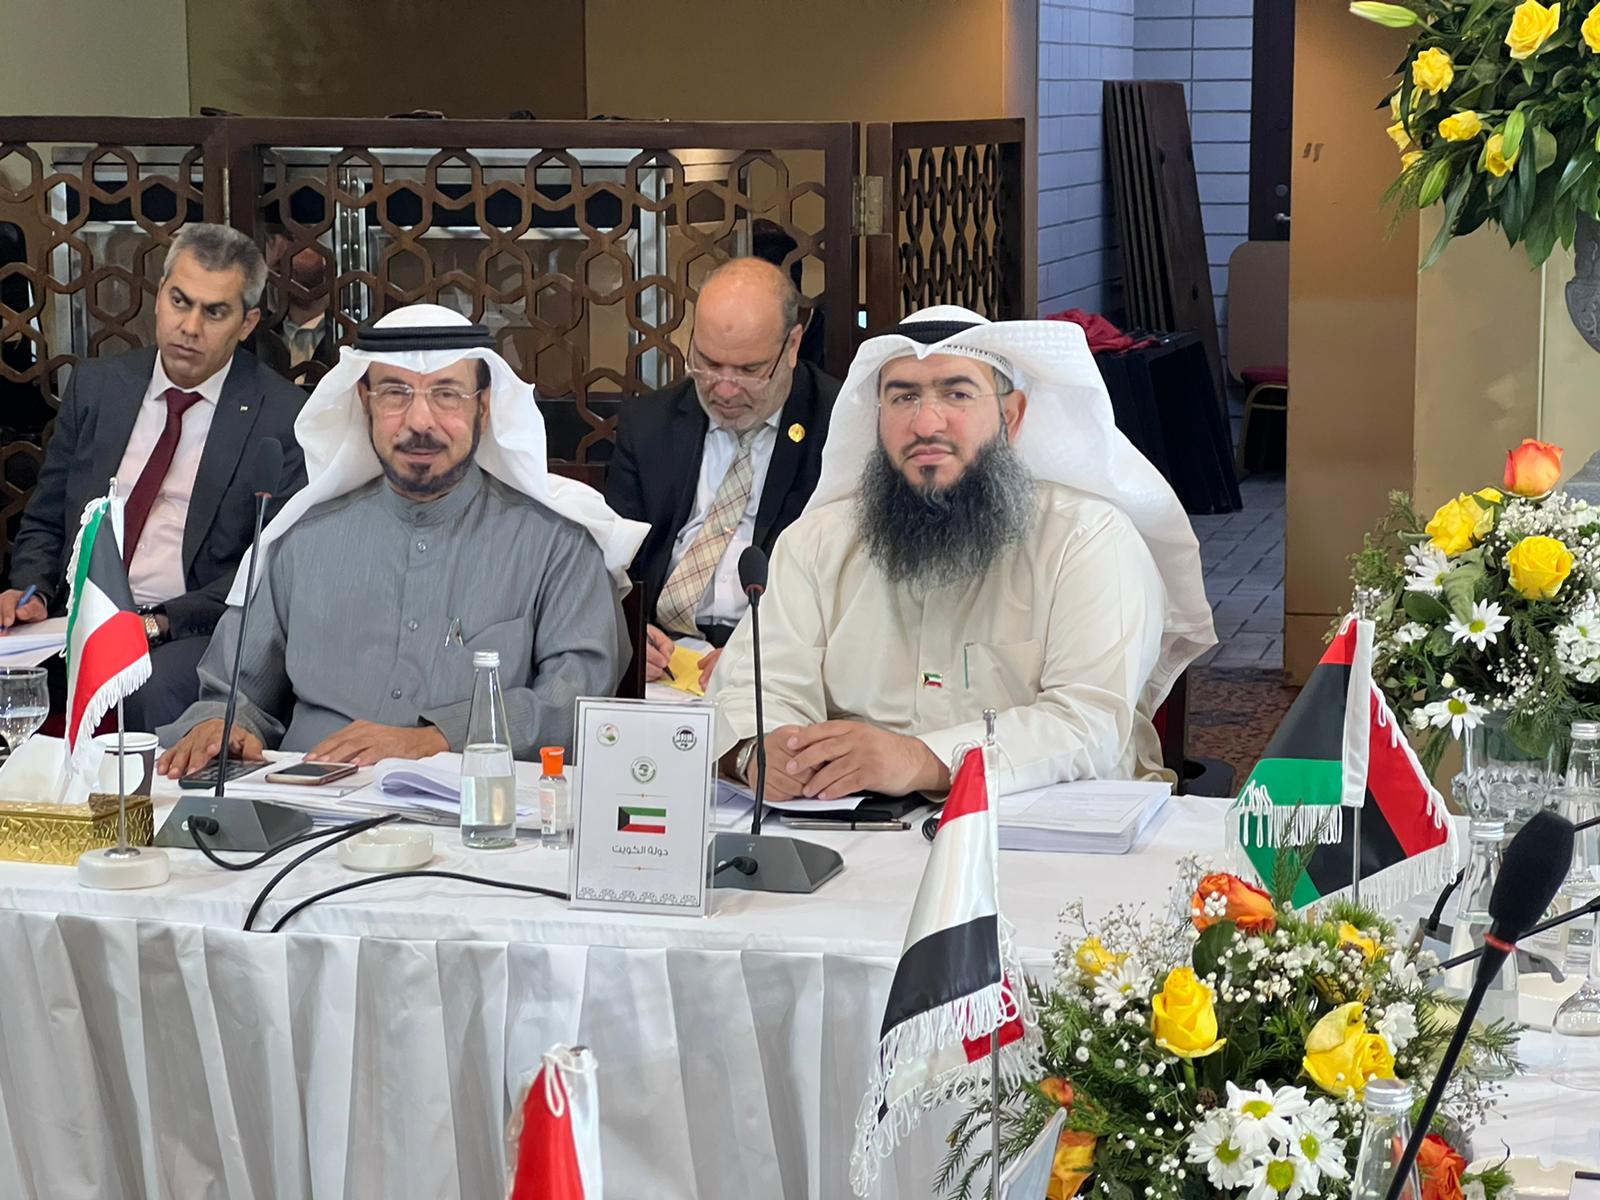 اللجنة التنفيذية للاتحاد البرلماني العربي توافق على توصية كويتية بشأن فتح حساب بنكي لتحويل المساهمات وتمكين الاتحاد من سداد الالتزامات المستحقة عليه